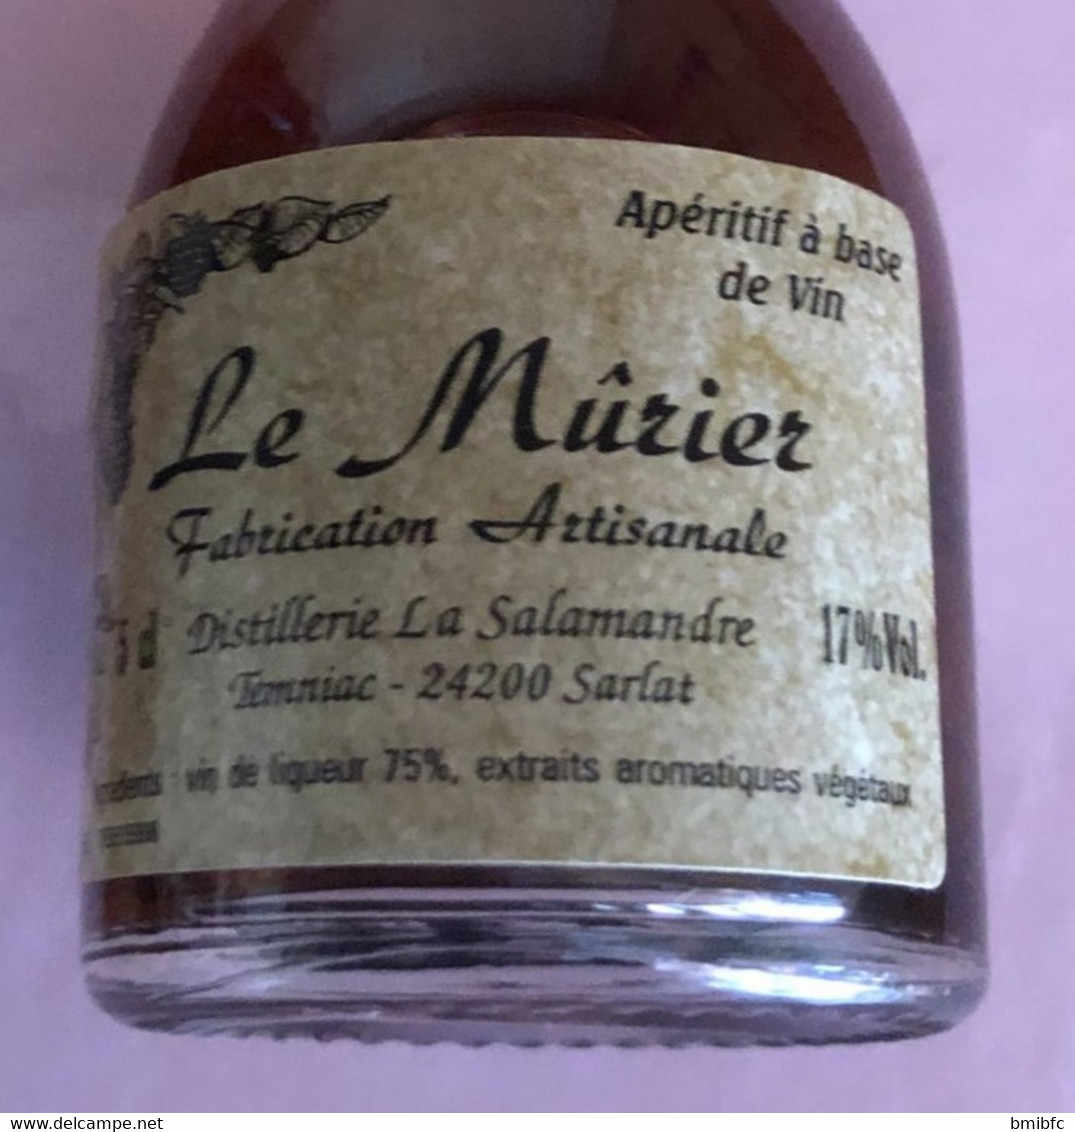 Le  Mûrier Fabrication Artisanale Distillerie La Salamandre  -  Temniac  - 24200 SARLAT - 5cl - 17% Vol - Mignonettes